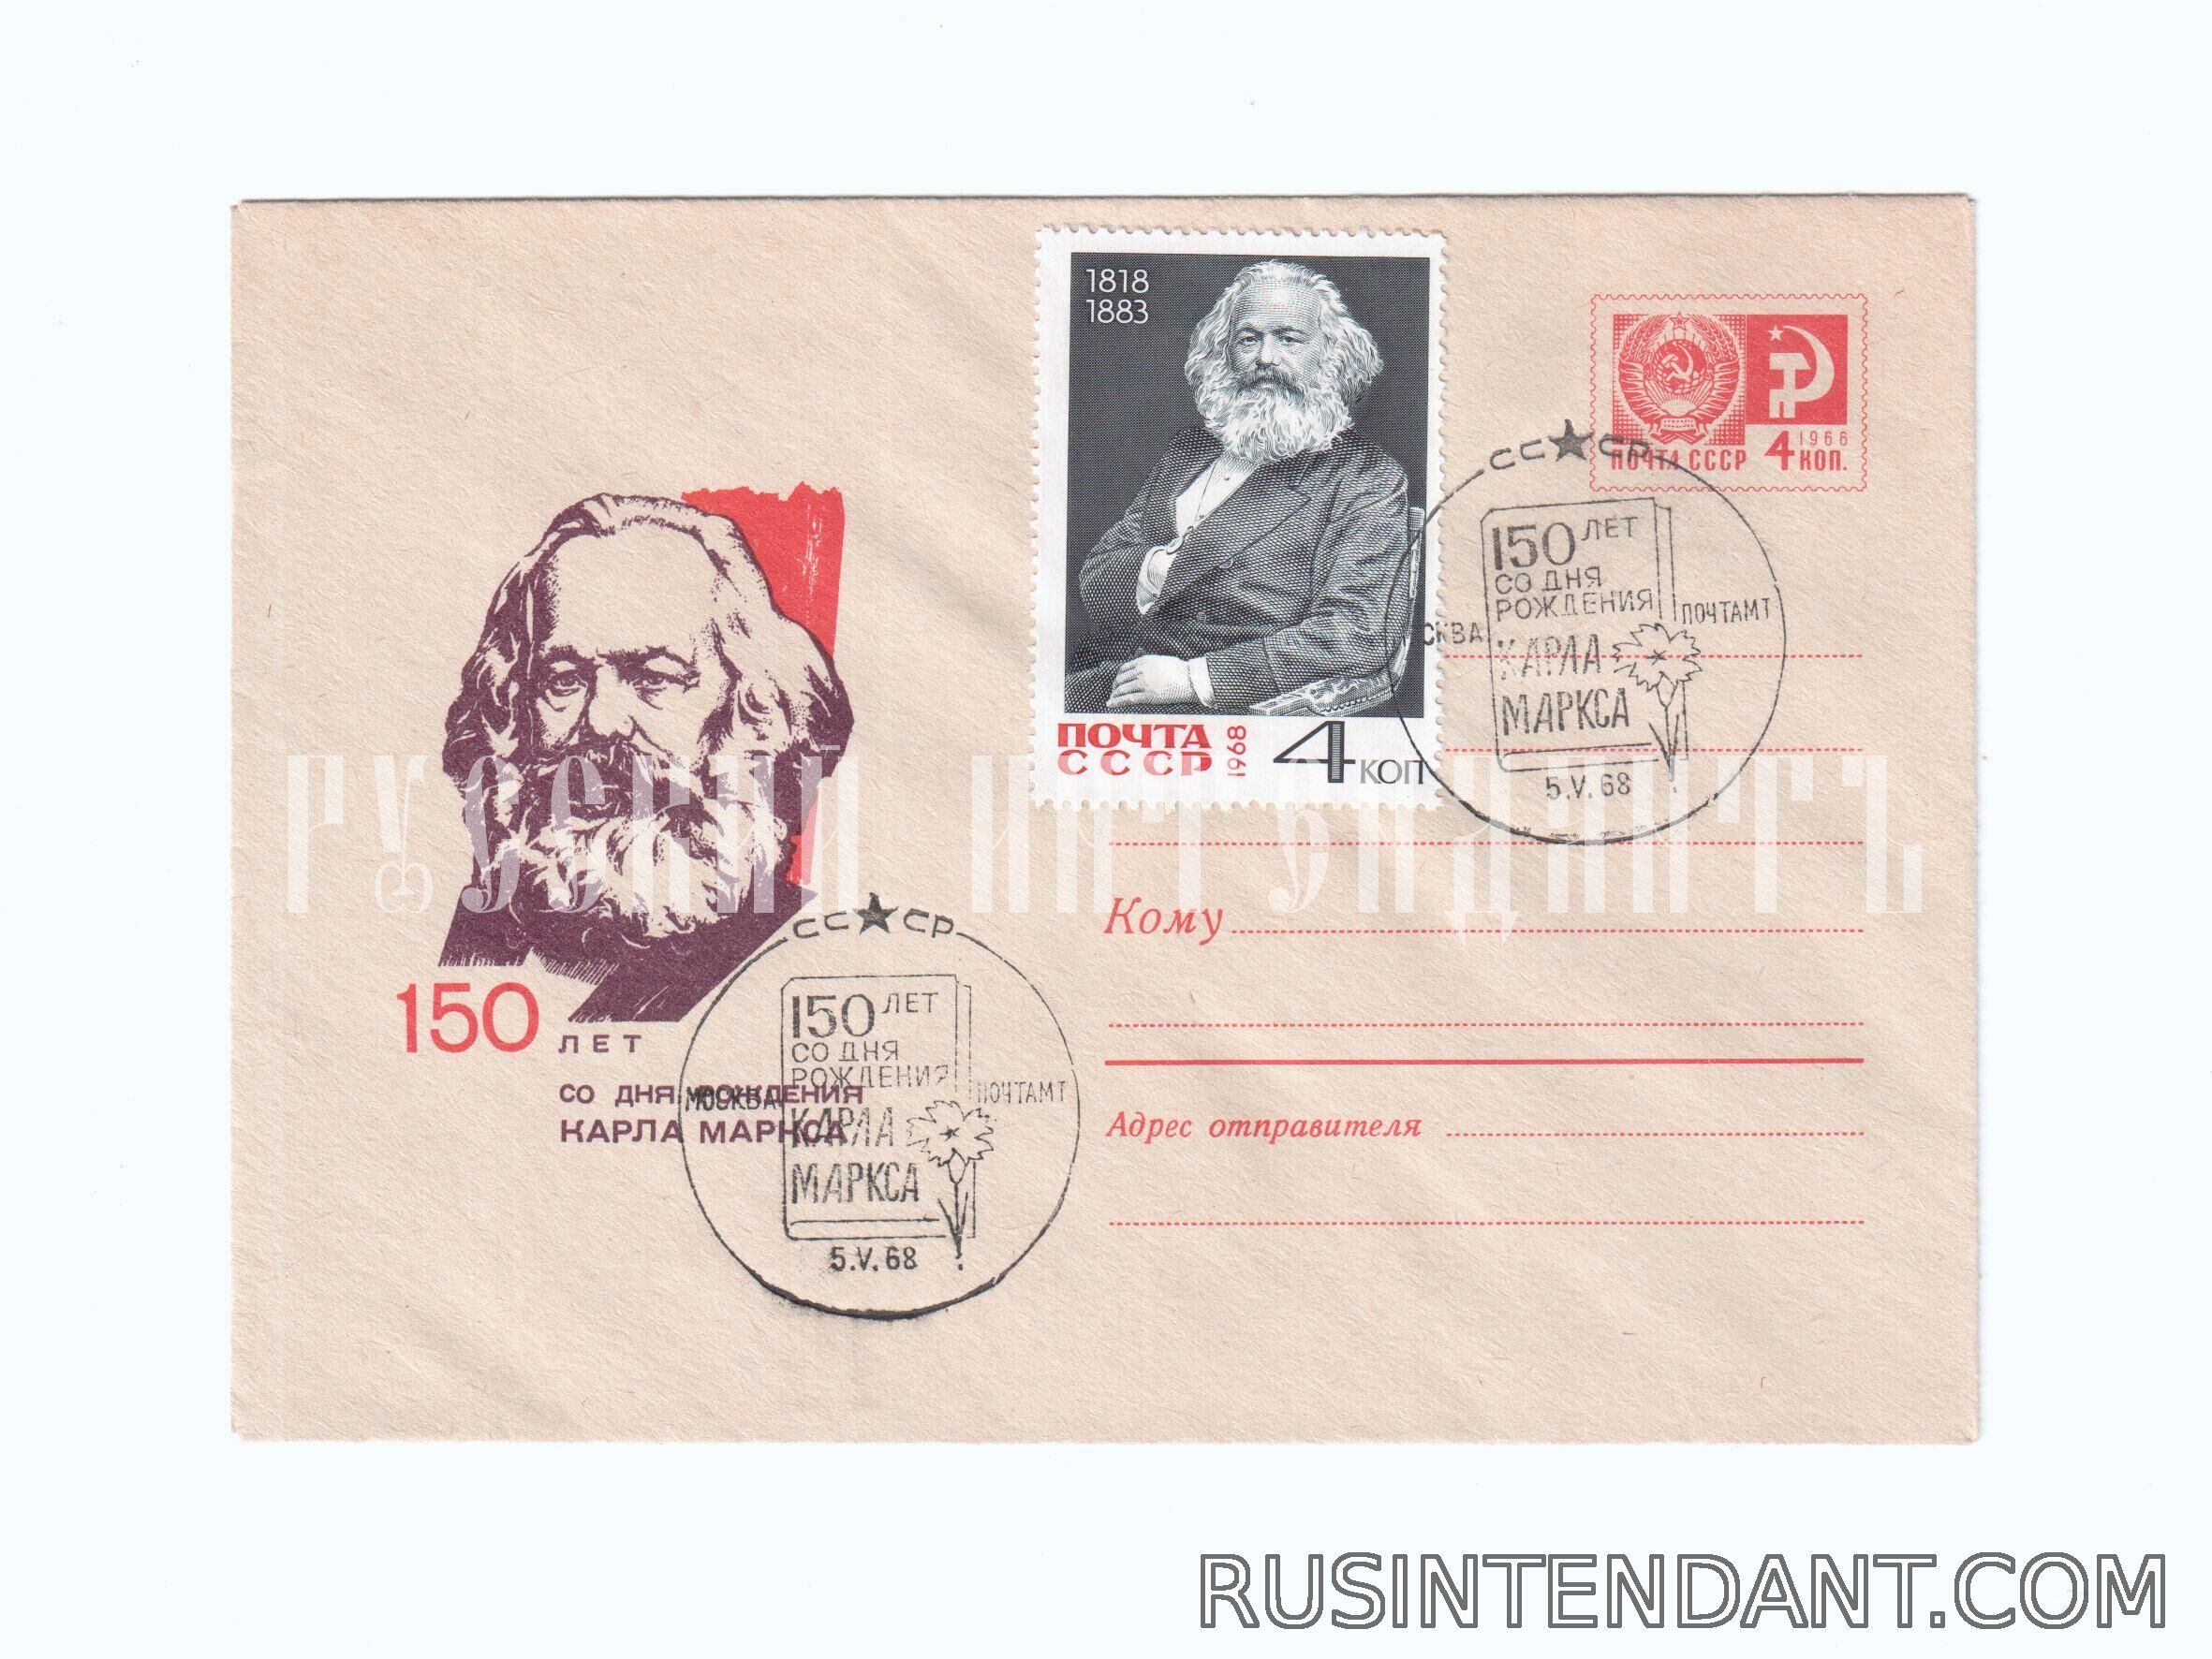 Фото 1: Почтовое спецгашение «150-летие со дня рождения Карла Маркса» 